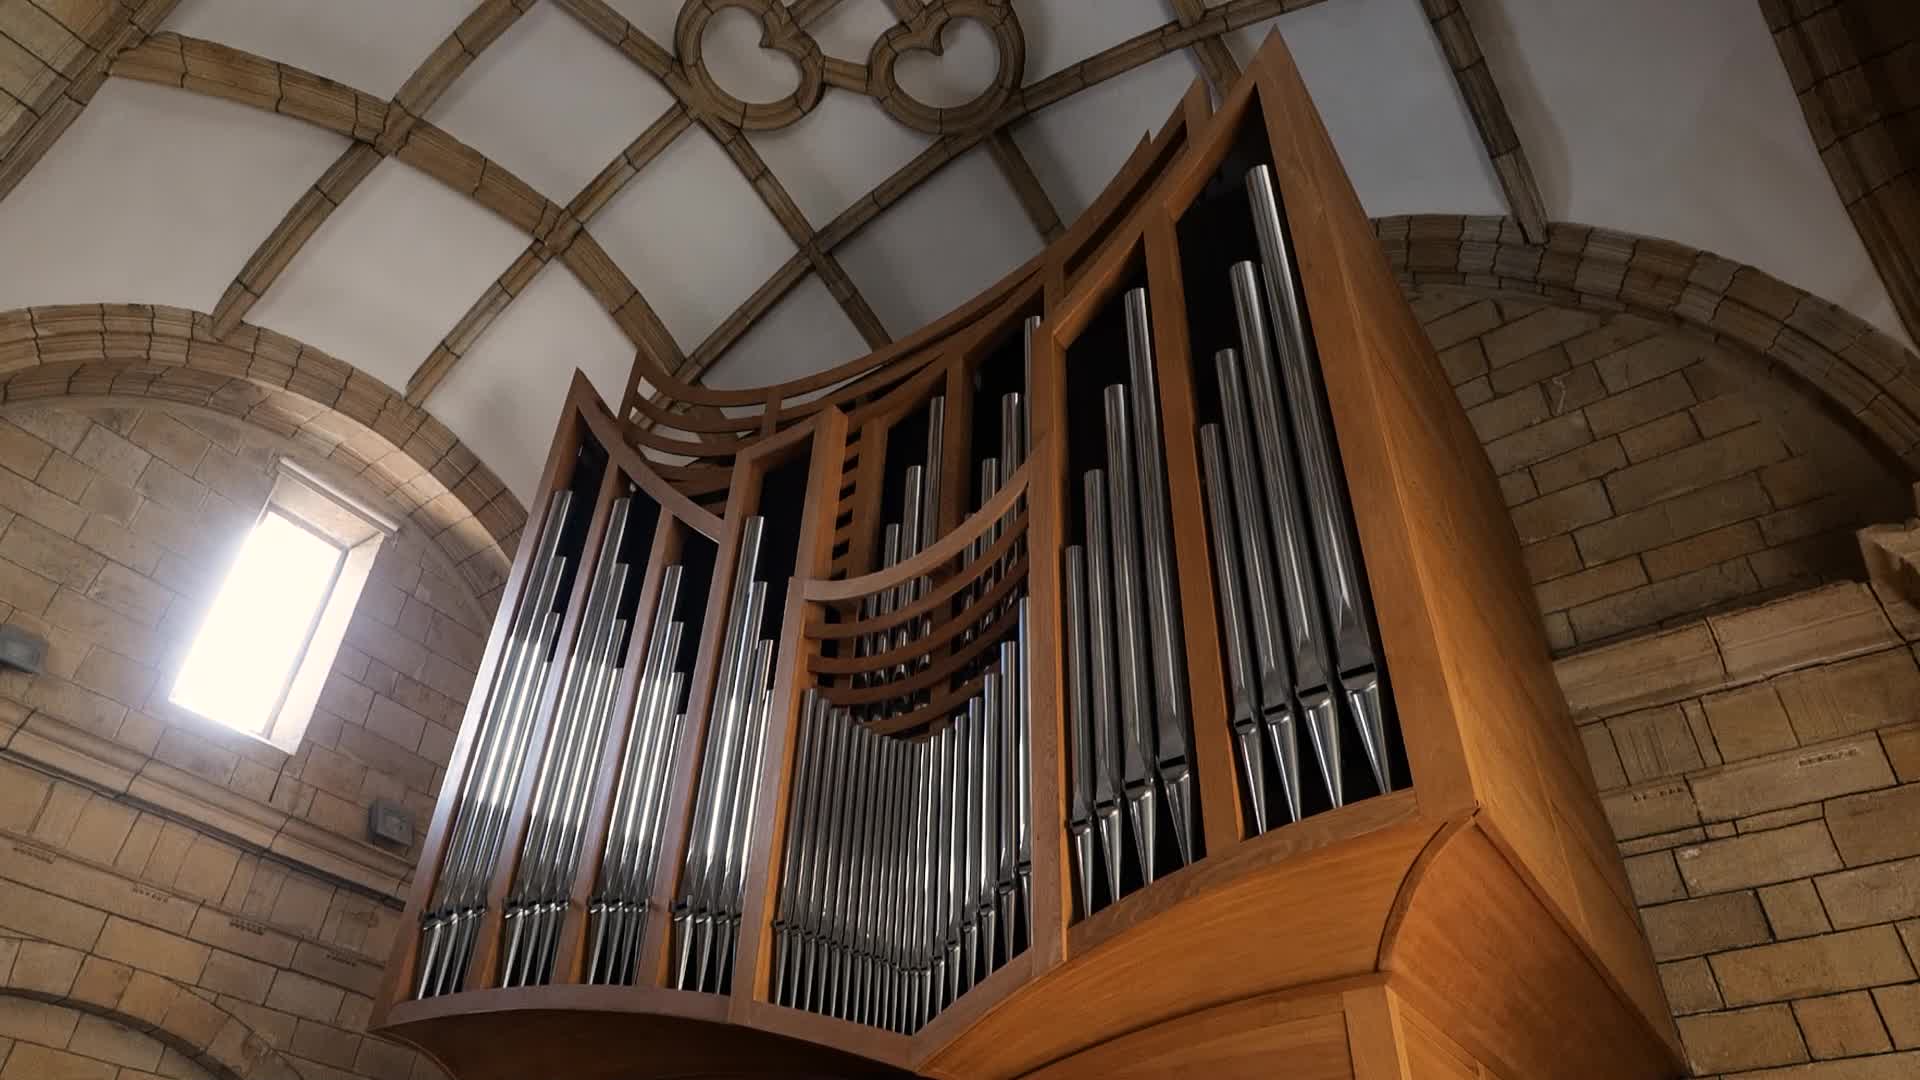 Orioko elizako organoa ezagutzeko, bisita didaktikoa eskaini zuen Xabier Lizaso piano-jotzaile oriotarrak